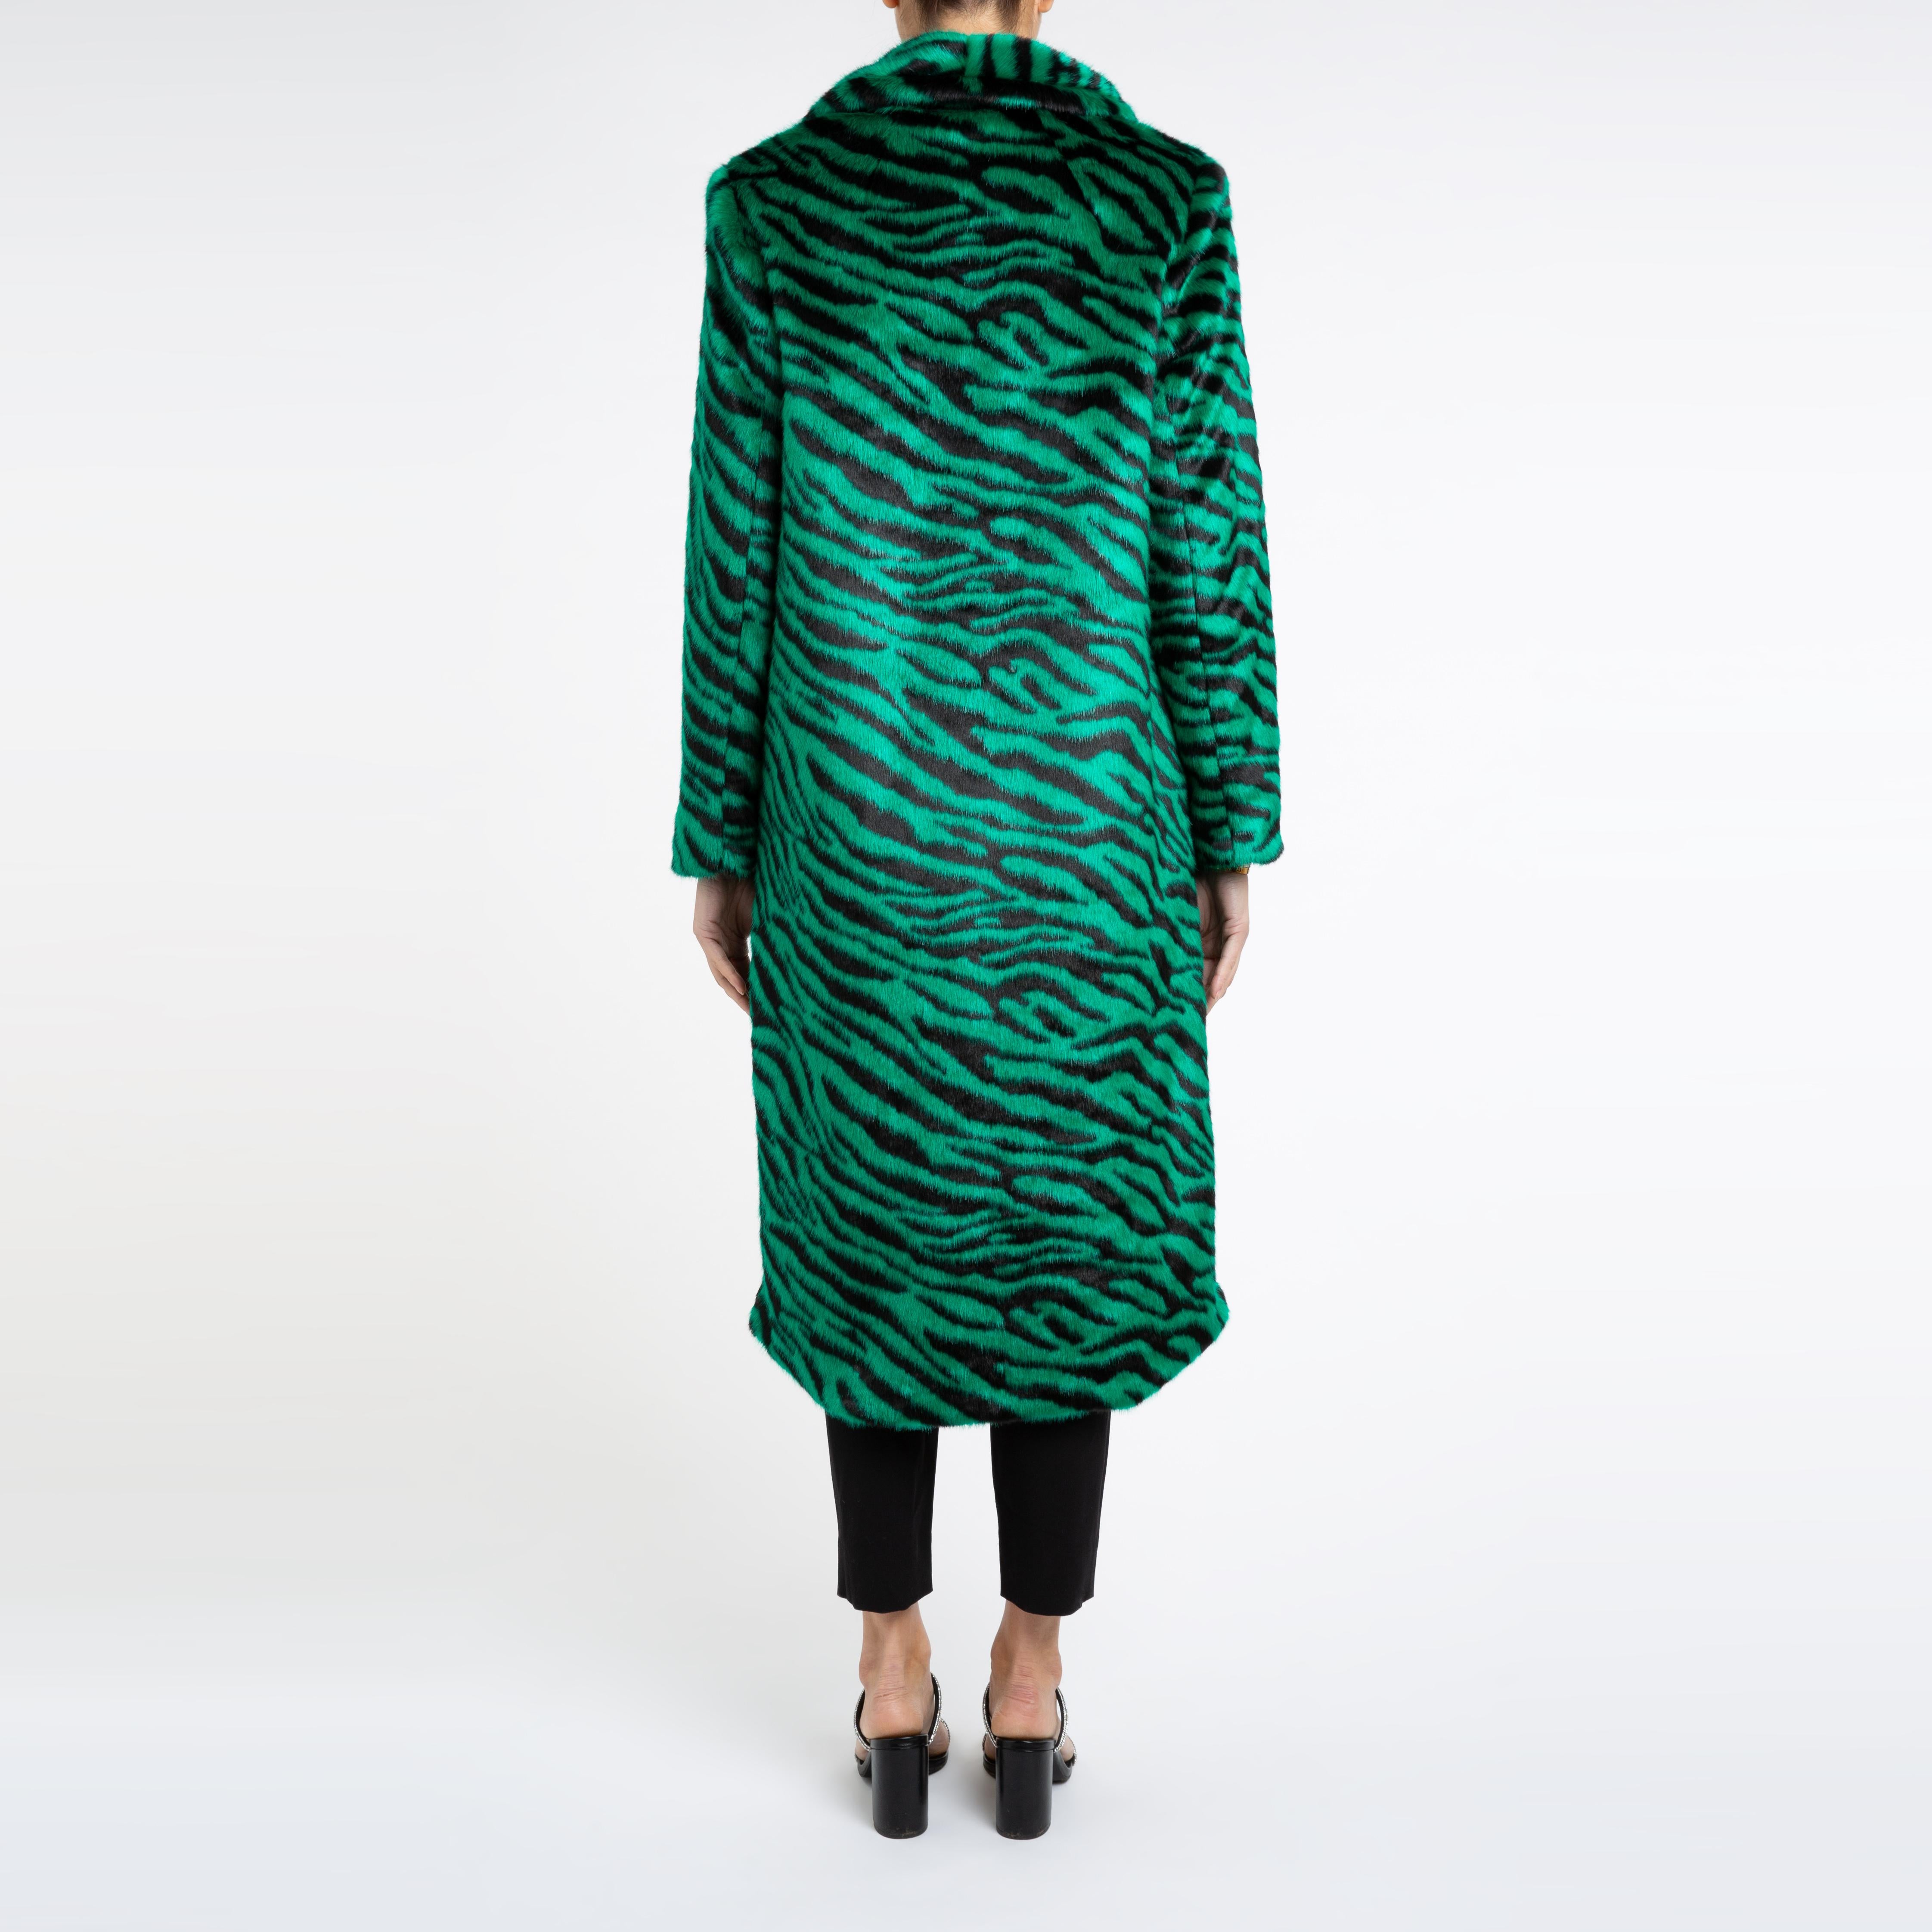 Verheyen London Manteau en fausse fourrure vert émeraude à imprimé zébré Esmeralda, taille UK 10 Pour femmes en vente